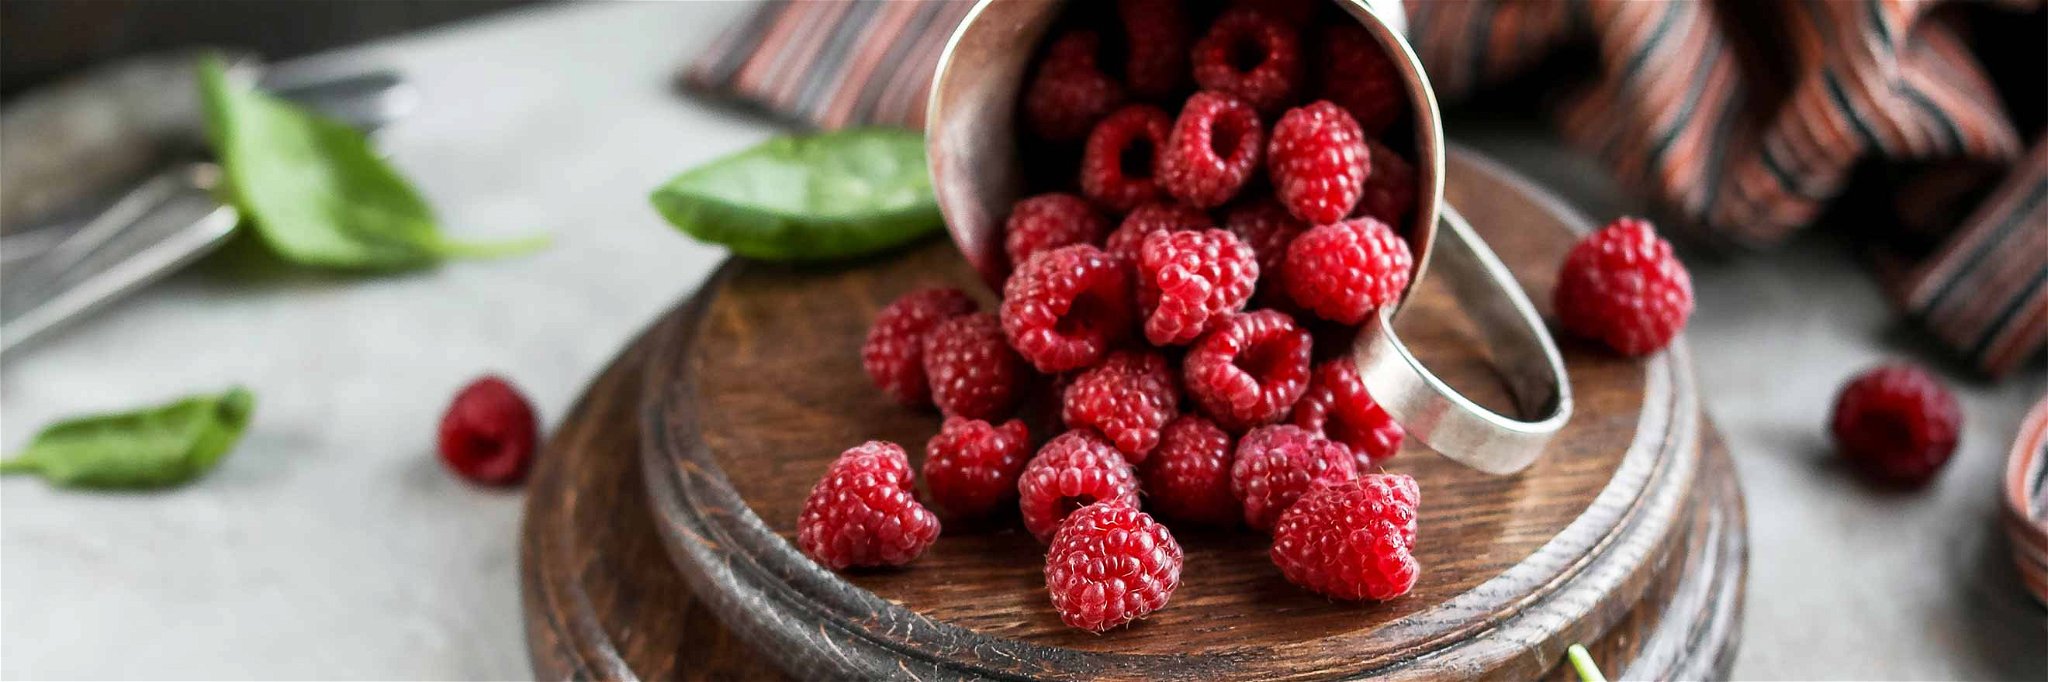 Raspberries have an&nbsp;unmistakable taste of summer.